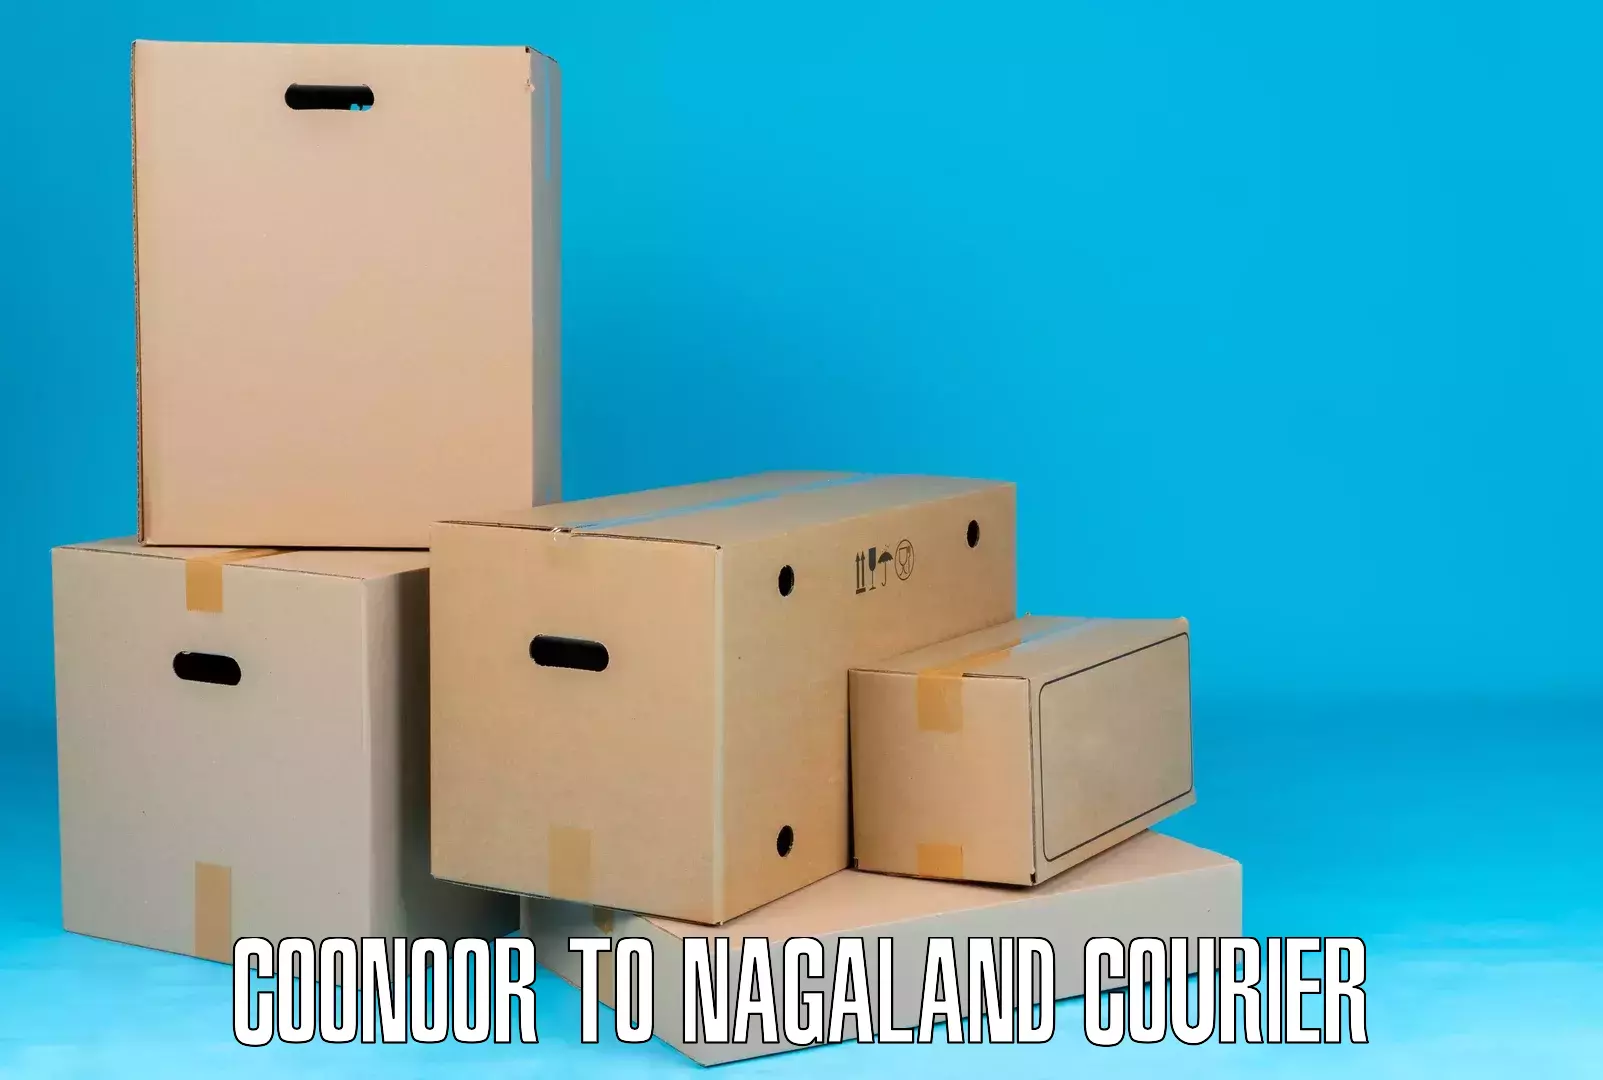 Express logistics providers Coonoor to Nagaland